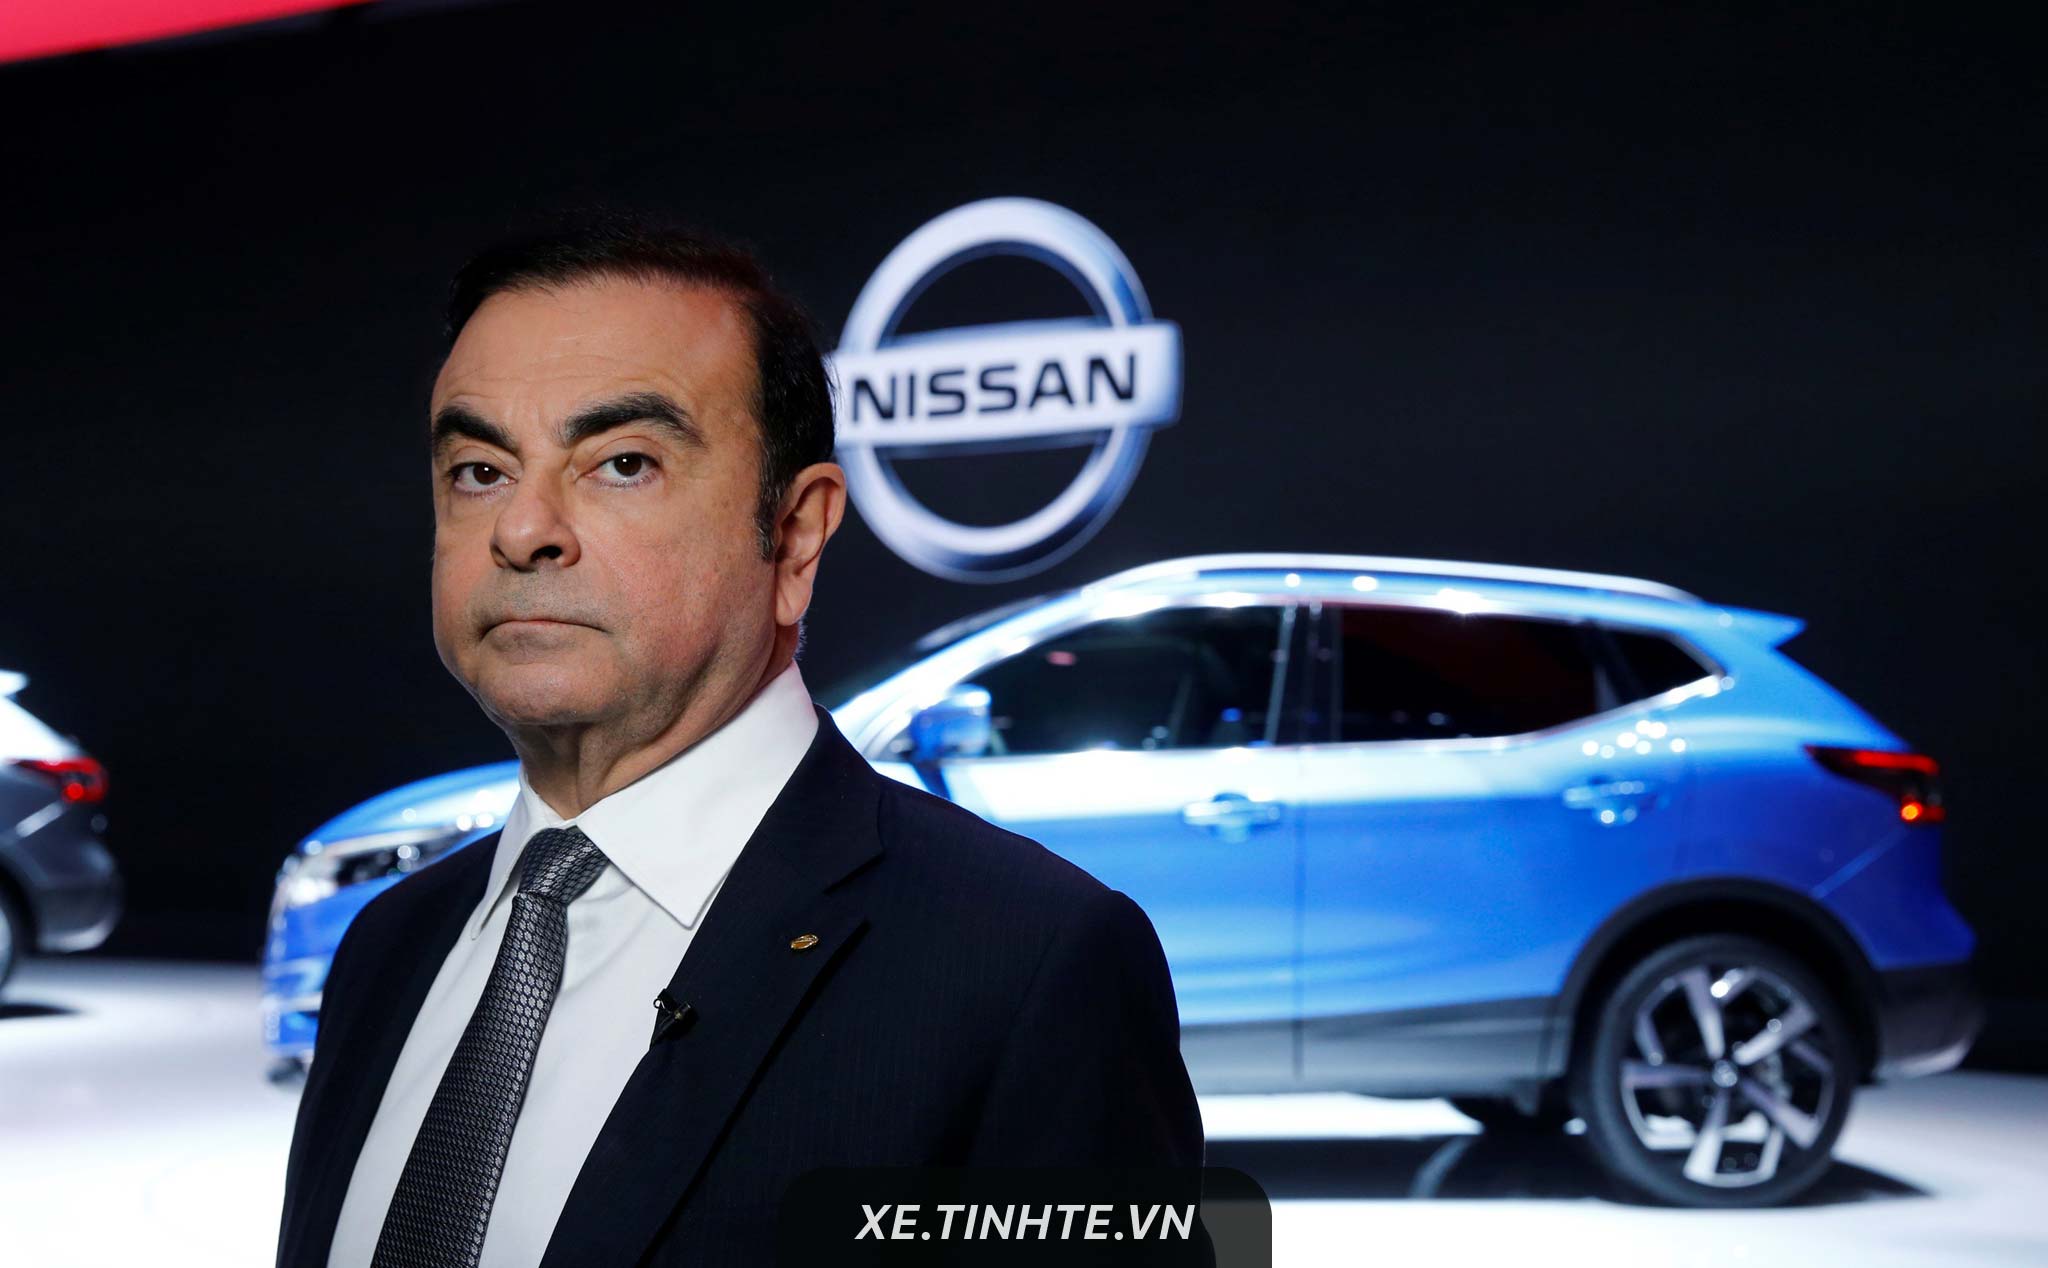 Carlos Ghosn - chủ tịch Nissan mất chức sau khi bị bắt tại Nhật Bản vì phạm luật tài chính